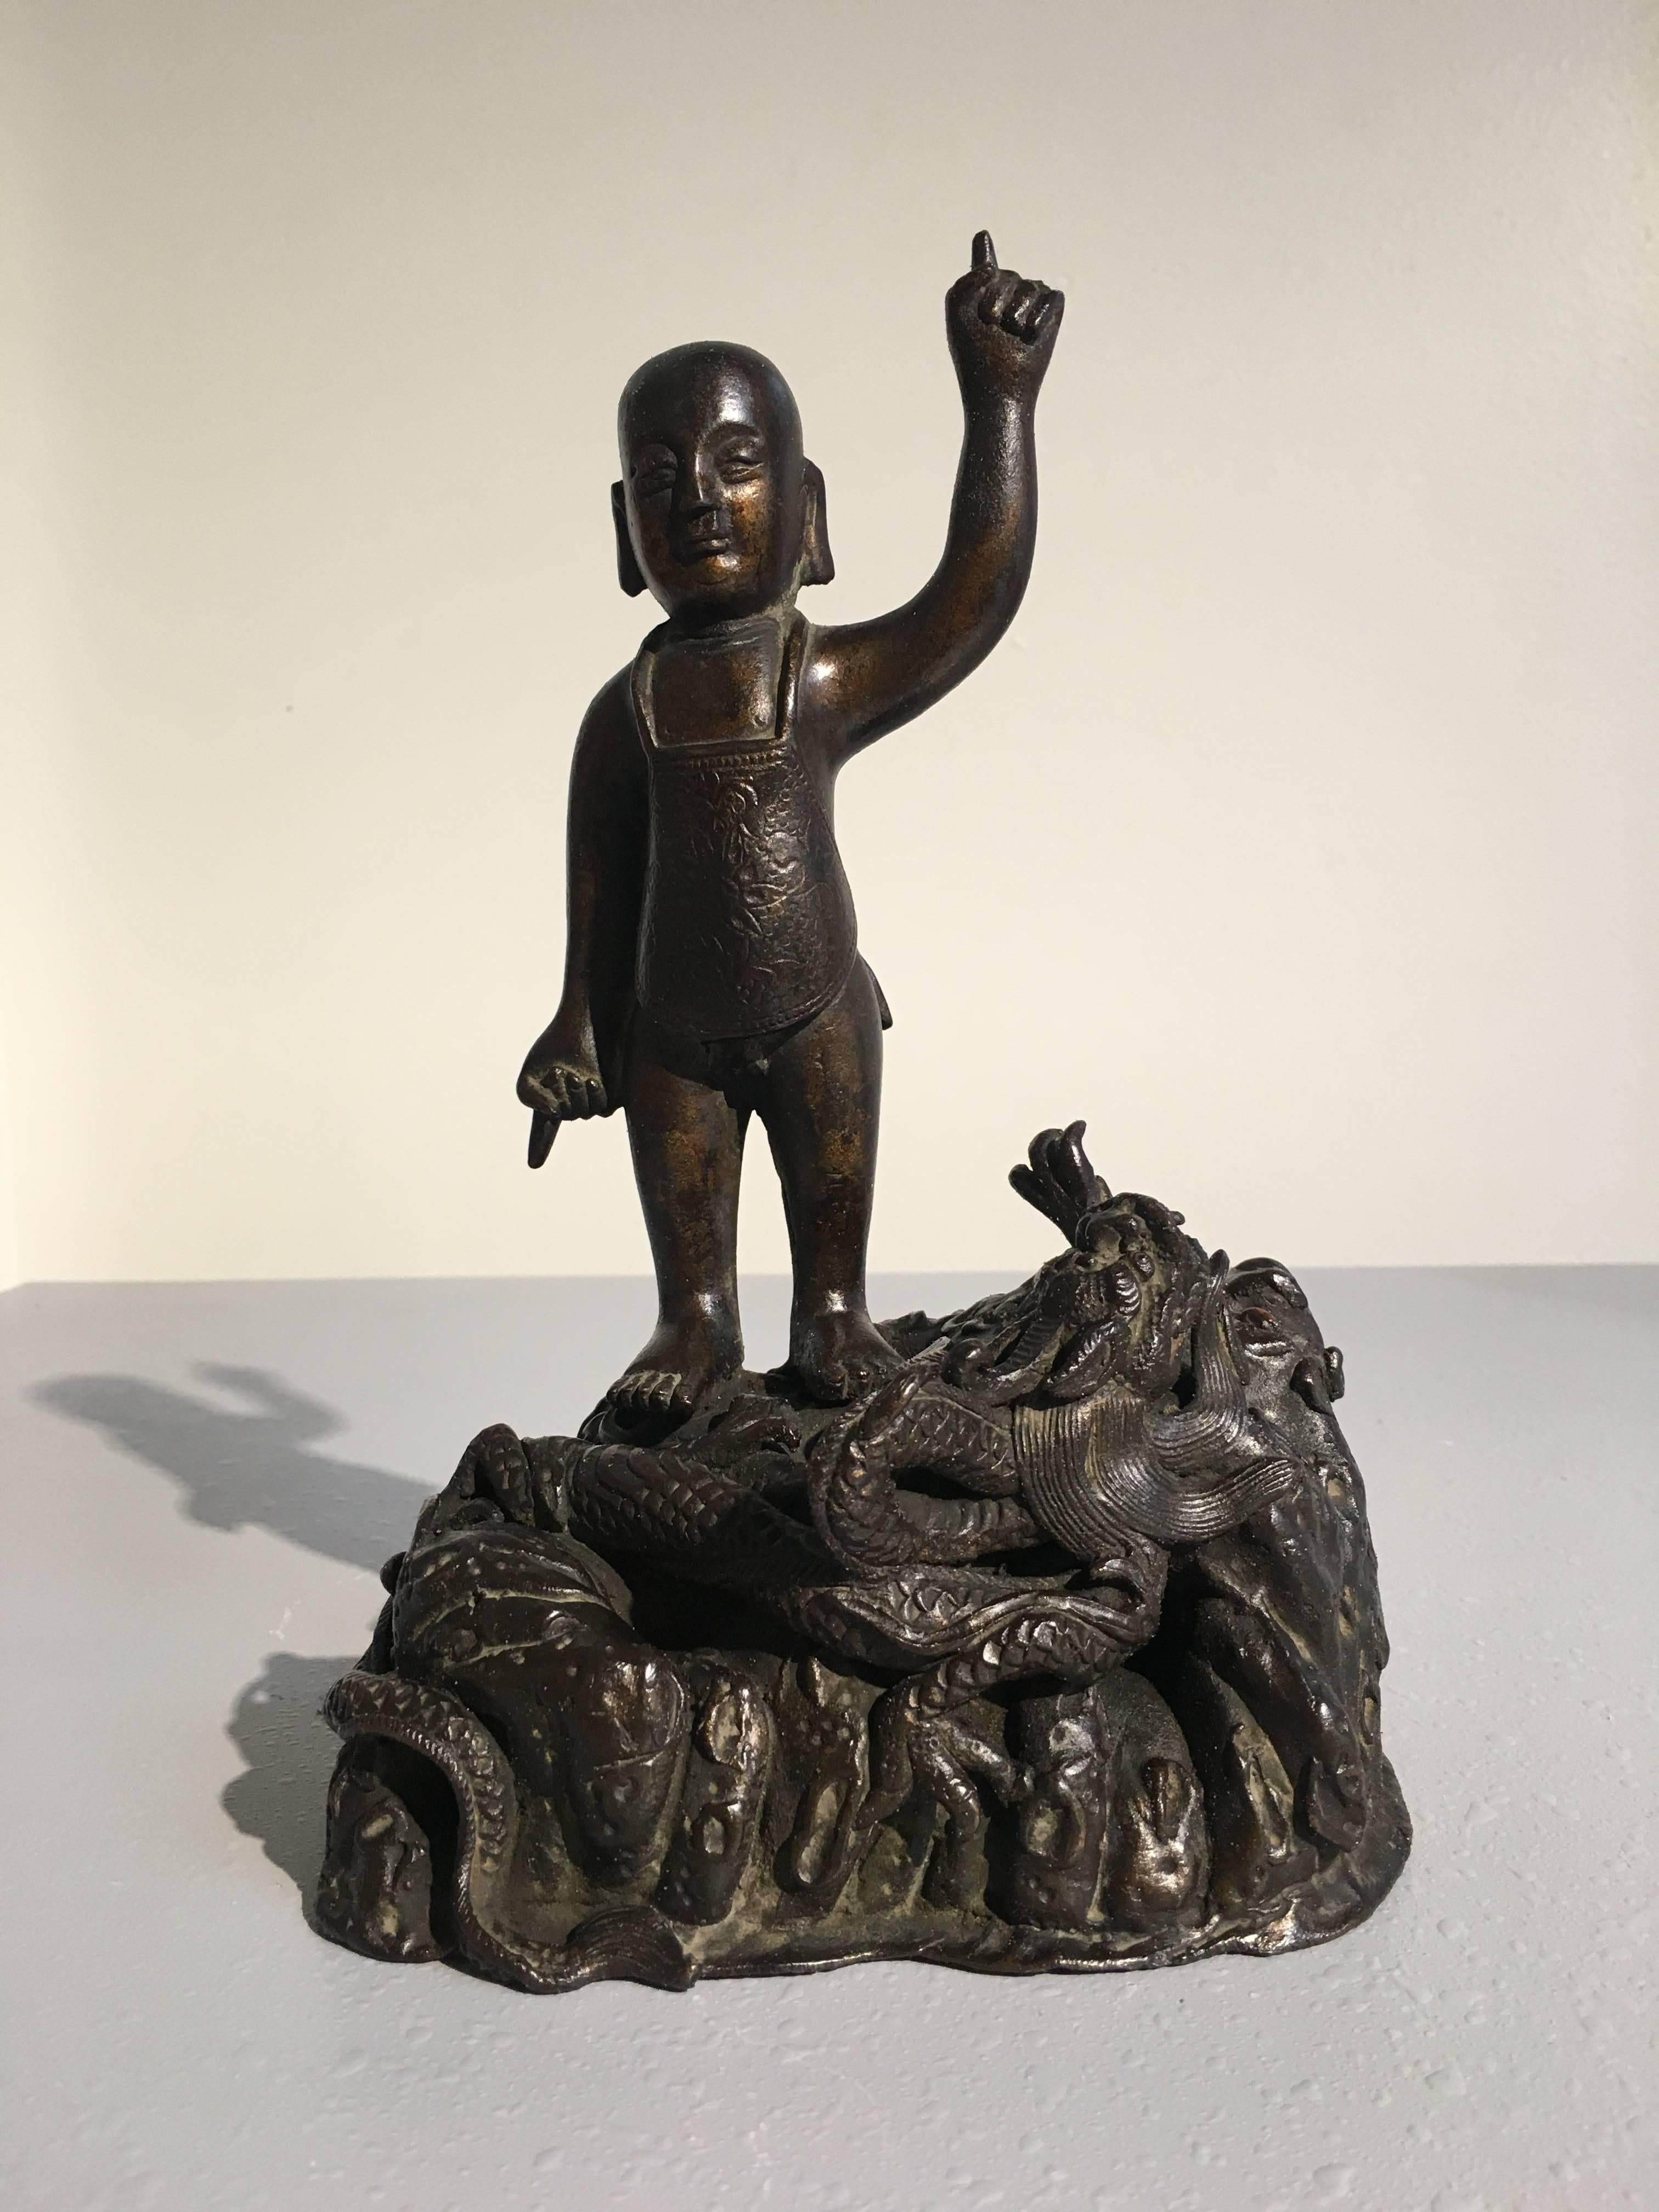 Rare et inhabituelle figurine en bronze de la dynastie chinoise Ming représentant le Bouddha enfant. Le jeune prince Siddhartha, qui deviendra le Bouddha, est représenté debout, une main dirigée vers le ciel, l'autre vers le sol. Il est nu, à